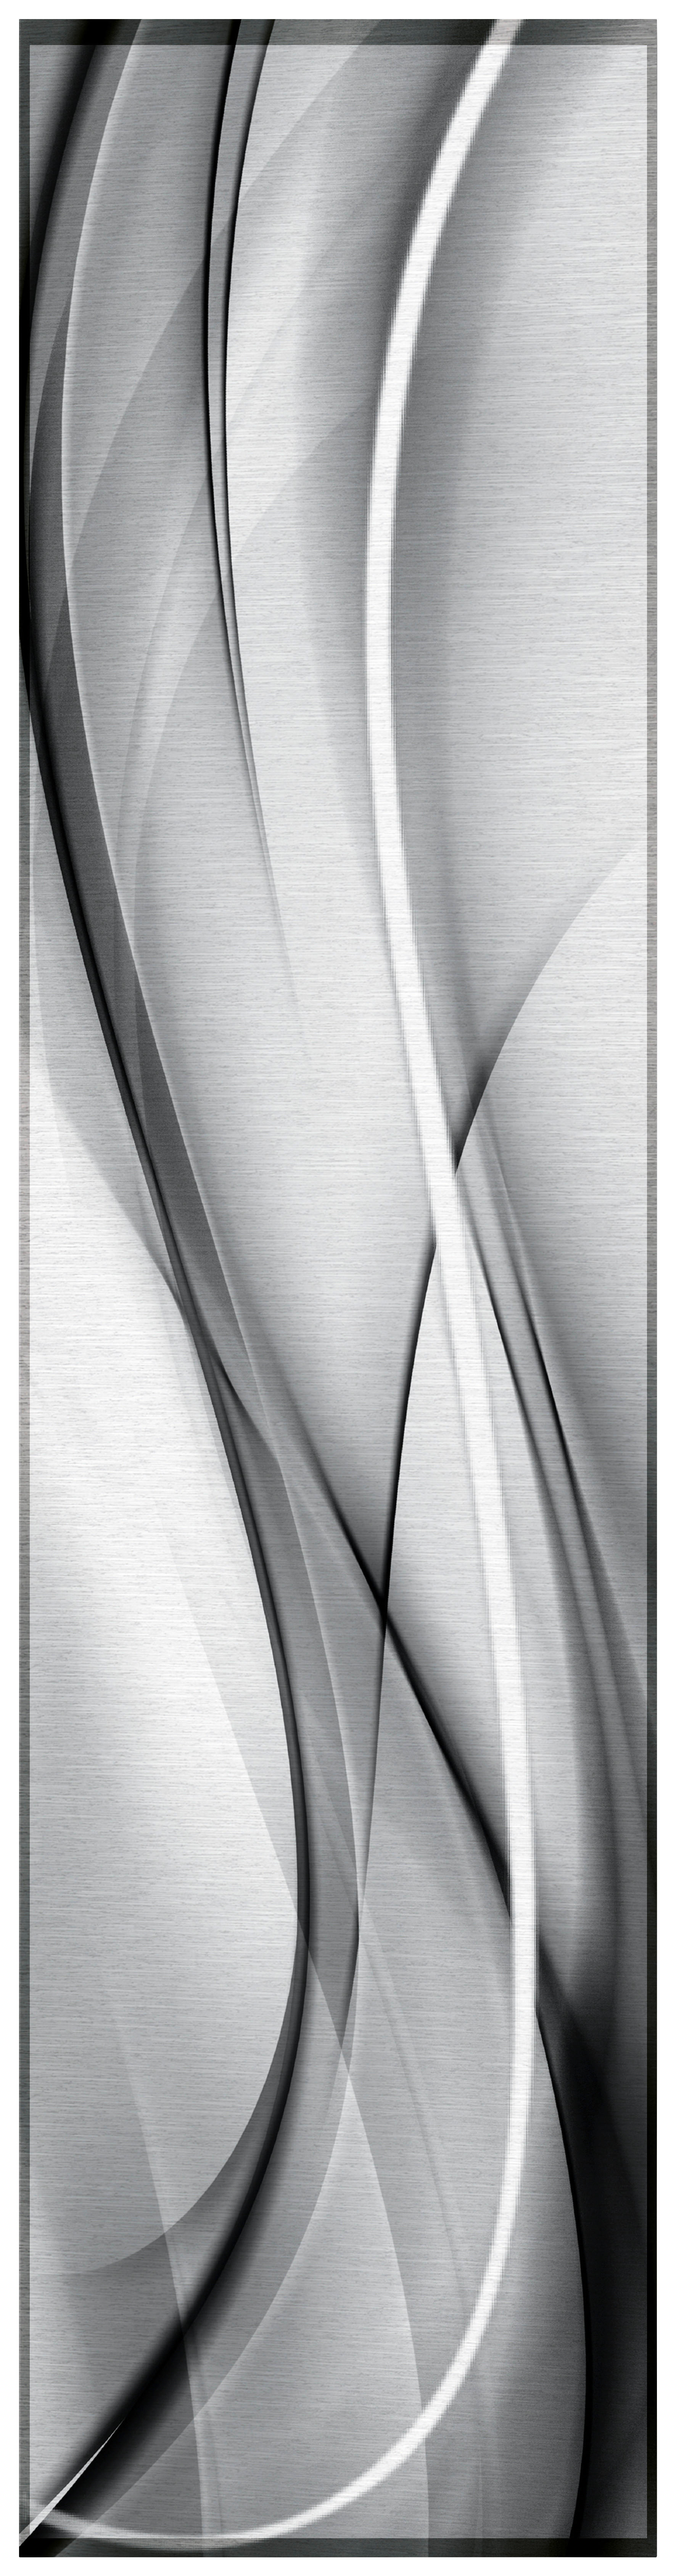 Schiebevorhang schwarz B/L: ca. 60x245 cm Schiebevorhang_Batik - weiß/schwarz (60,00/245,00cm)